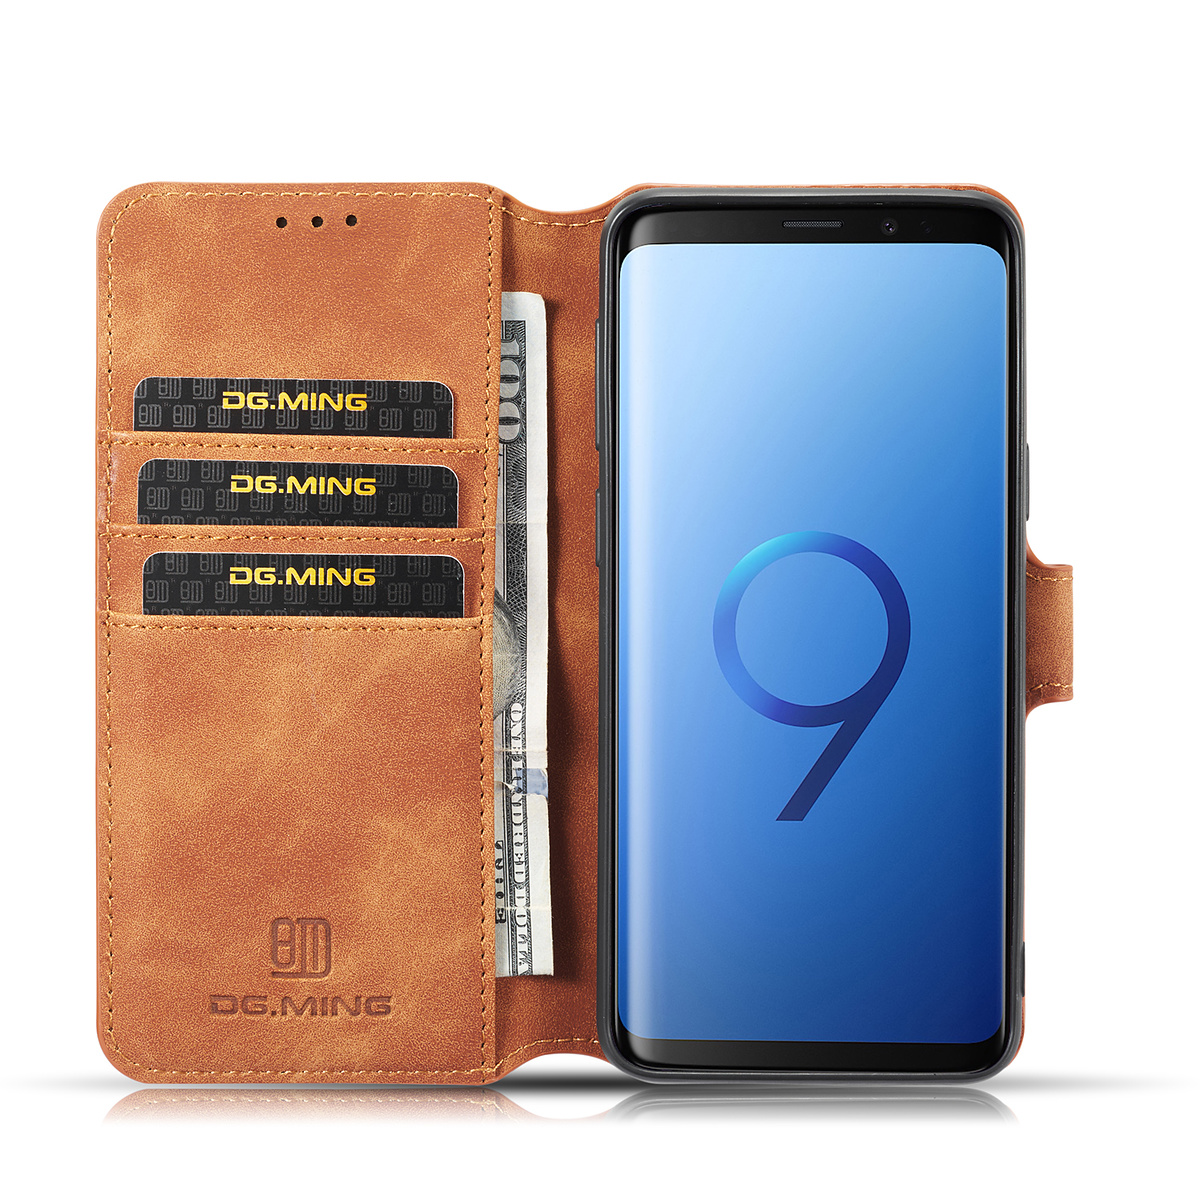 DG.MING Retro fodral med kortplats, ställ, Samsung S9, brun